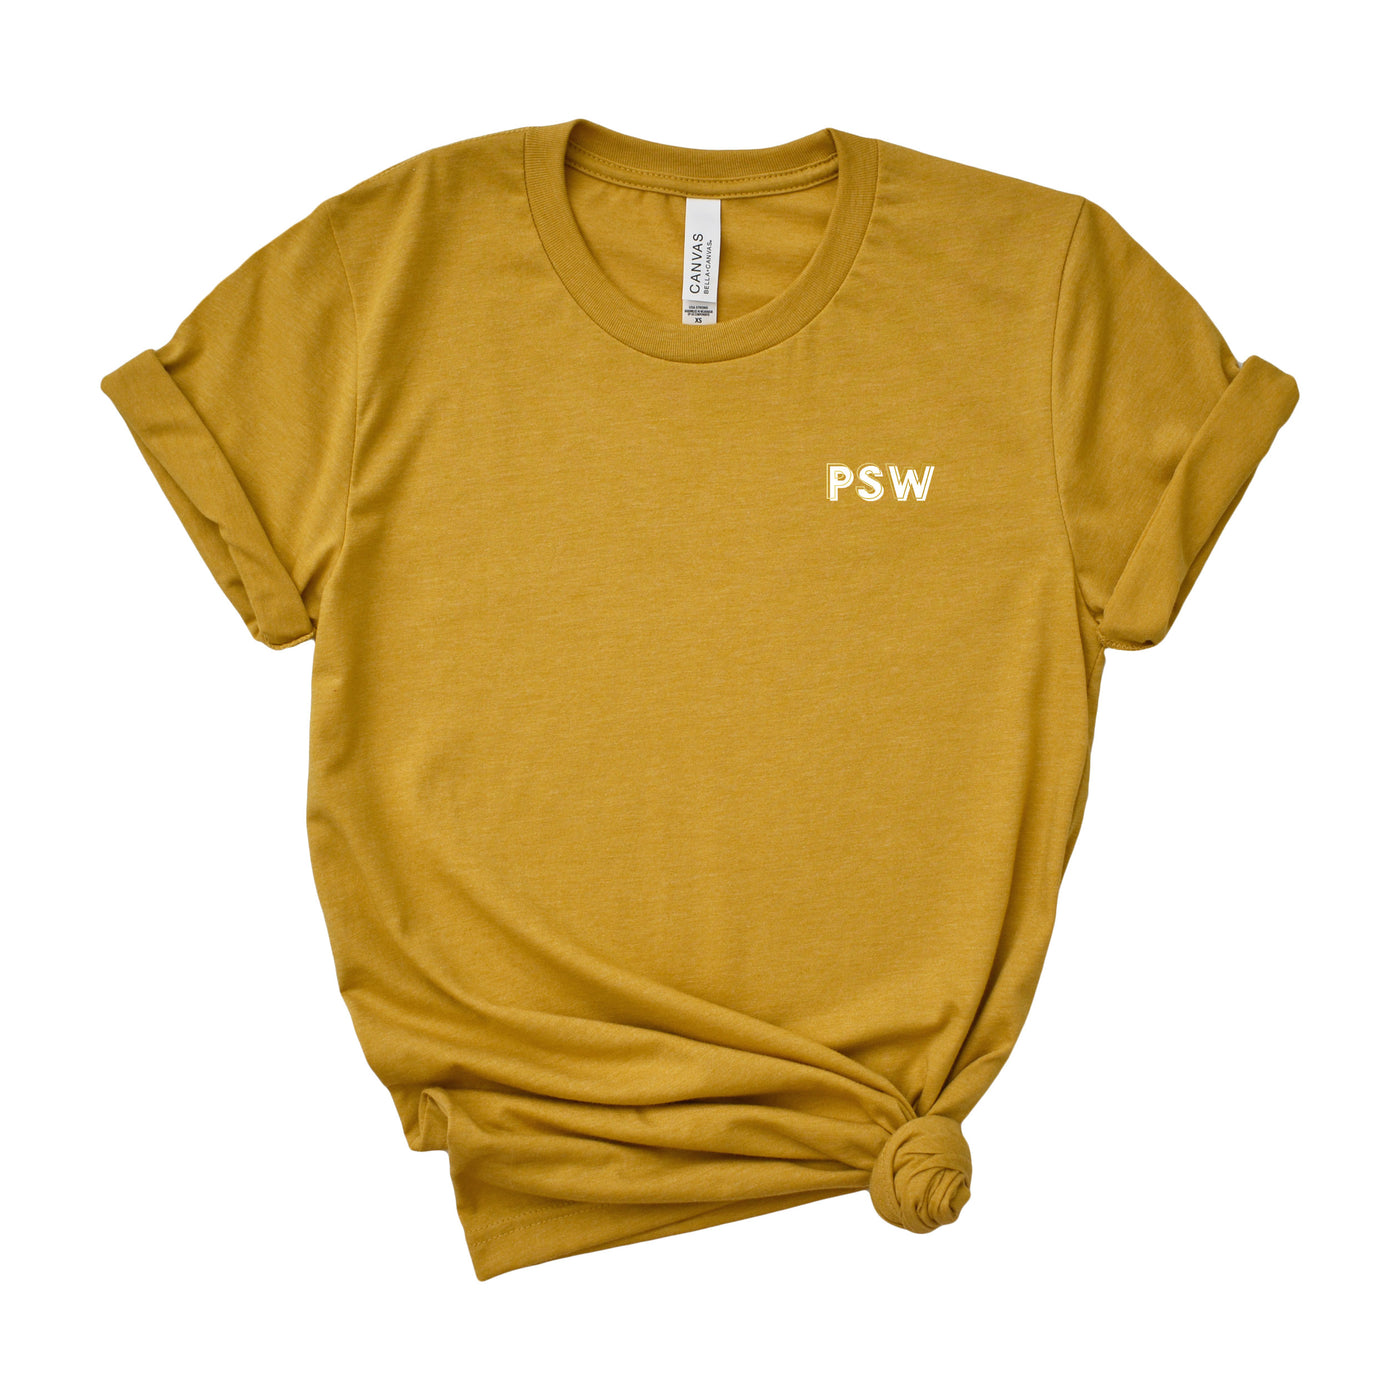 PSW Creds - Shirt